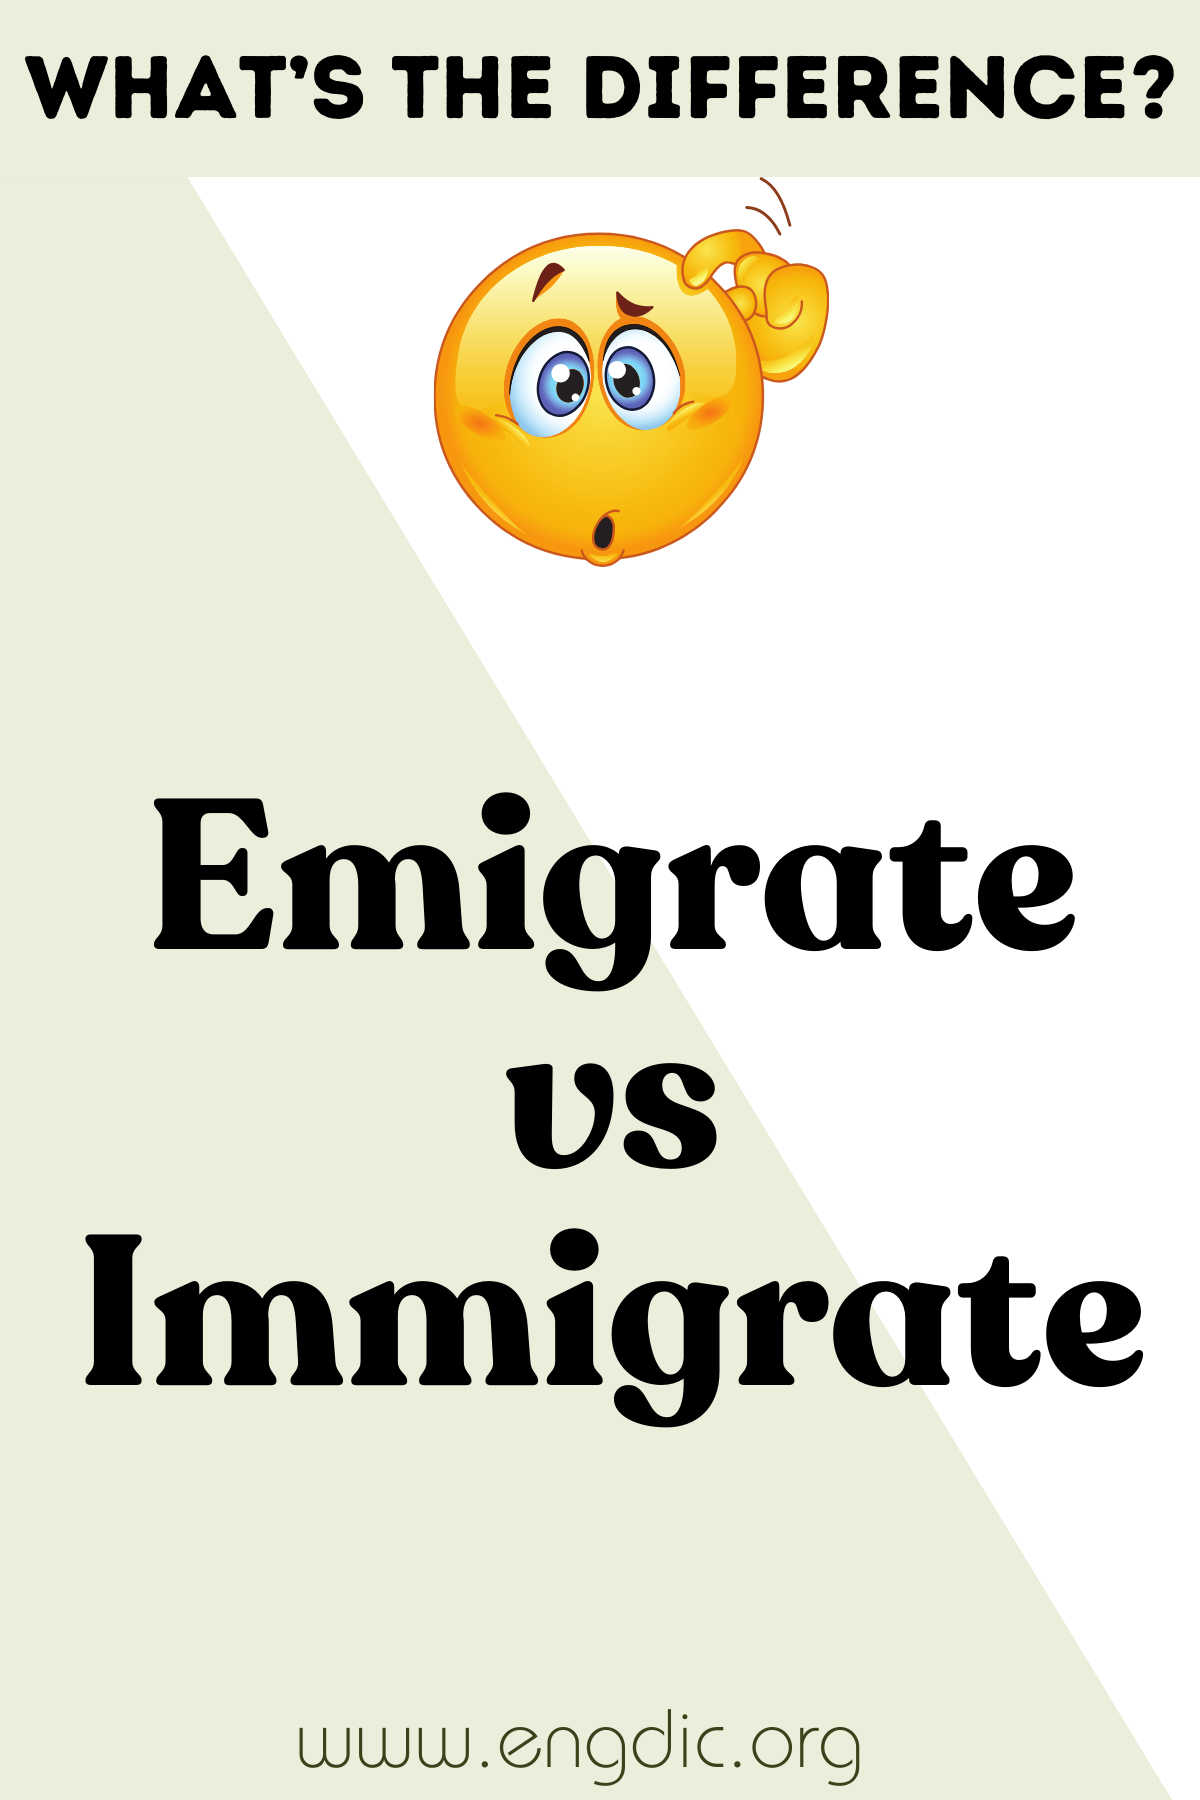 Emigrate vs Immigrate